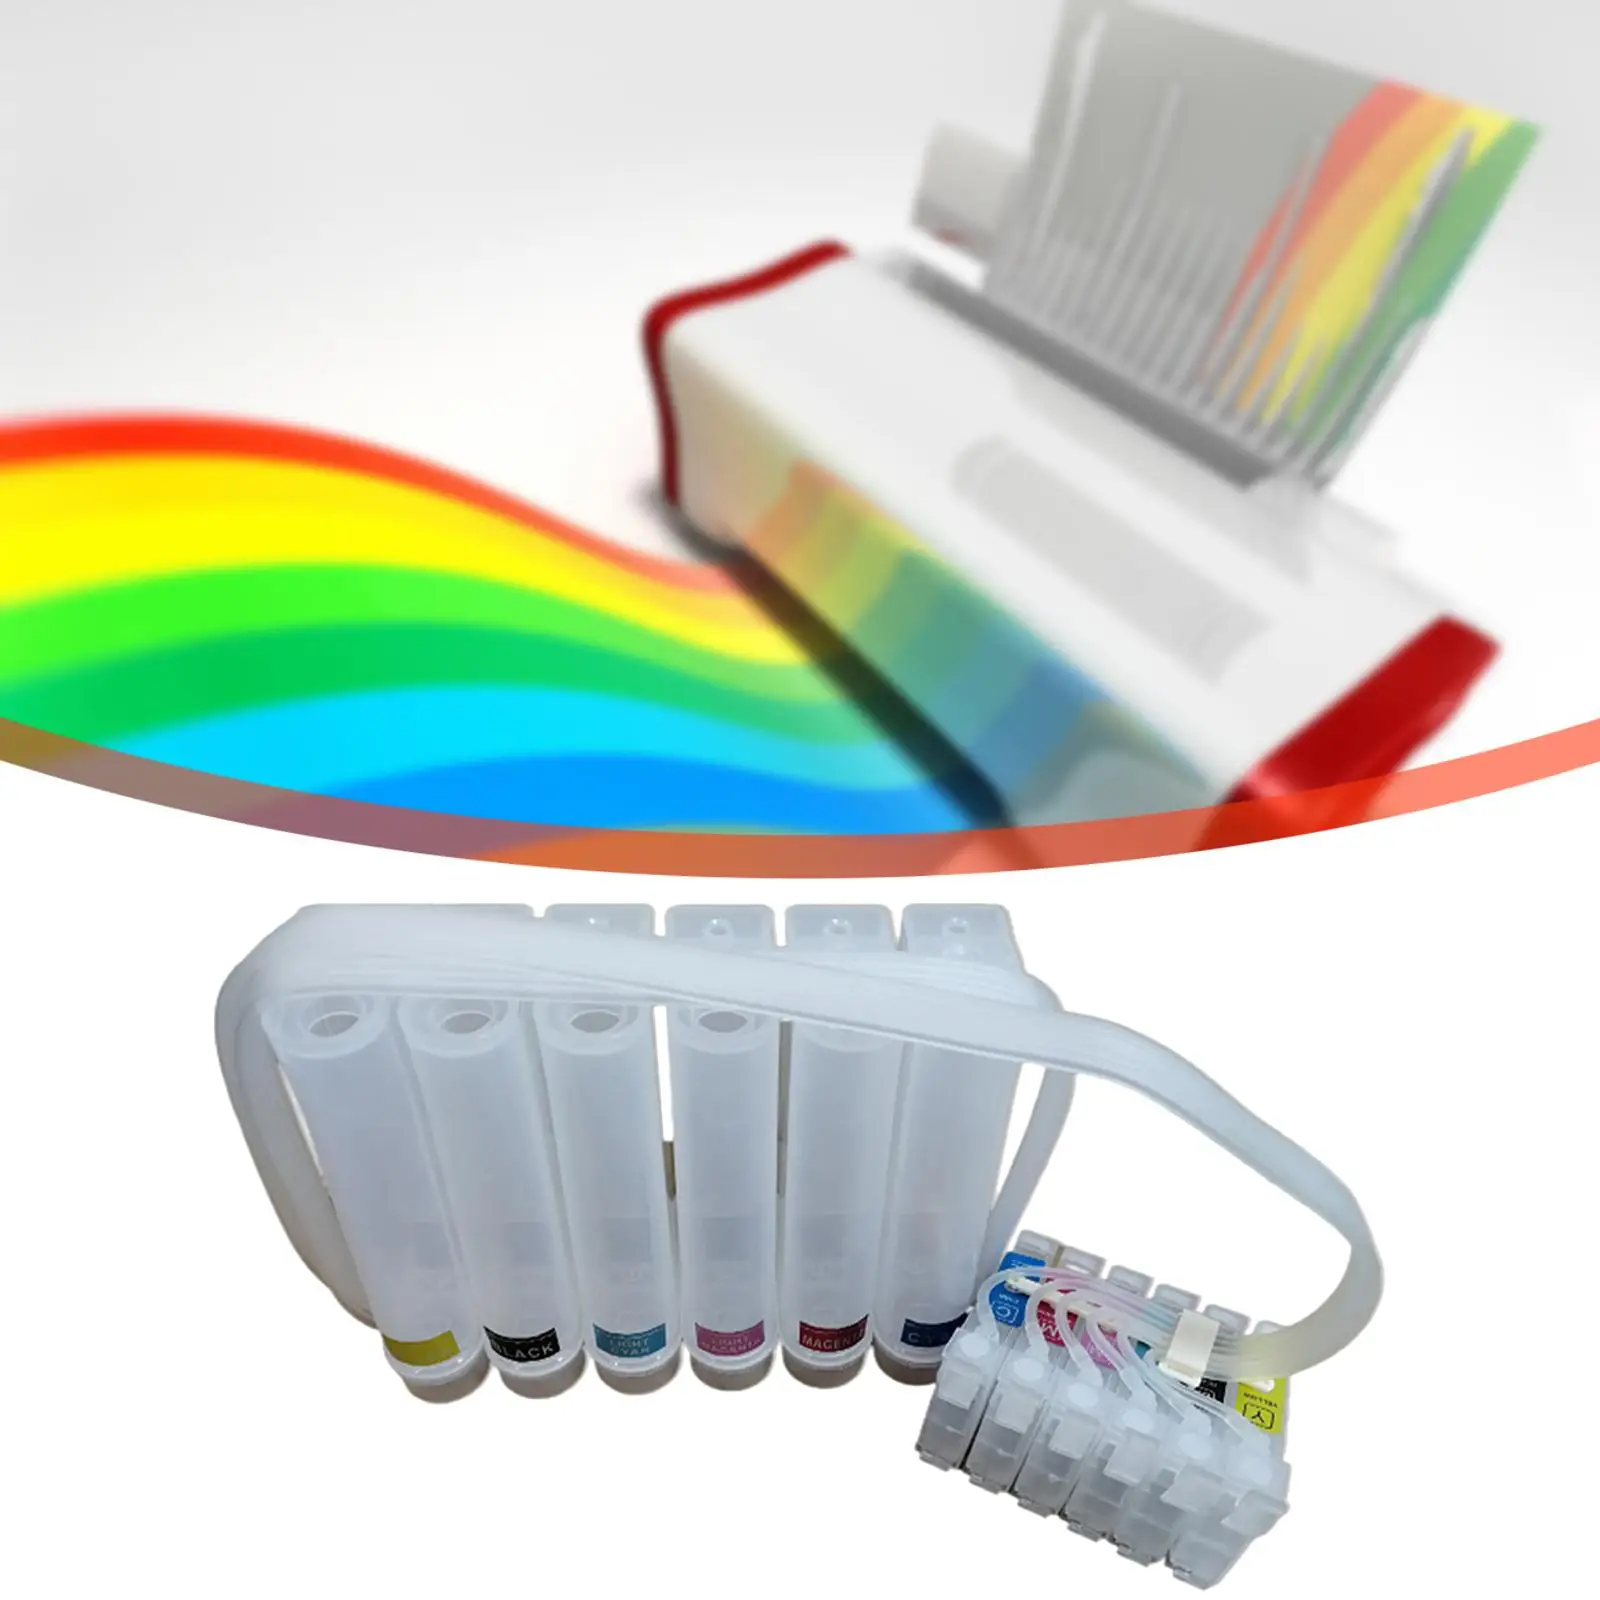 Folyamatos tintaellátó készletek Professional 6 szín 80ml csere újratölthető utántöltő készletek Ciss DIY tintanyomtató tartozék nélkül - 4